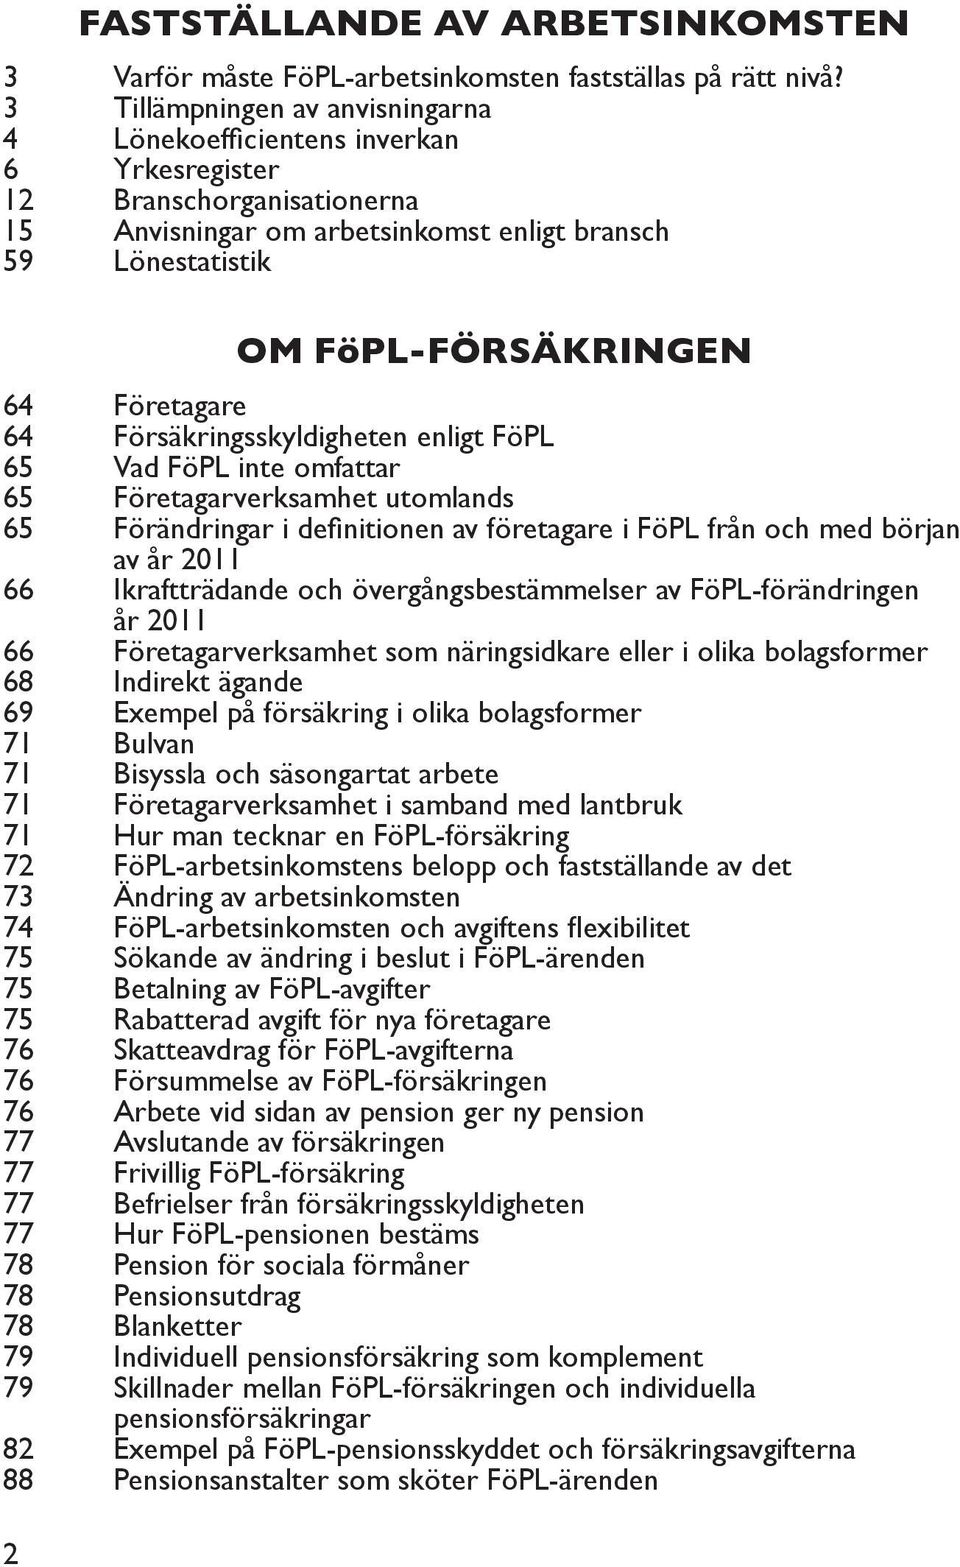 Företagare 64 Försäkringsskyldigheten enligt FöPL 65 Vad FöPL inte omfattar 65 Företagarverksamhet utomlands 65 Förändringar i definitionen av företagare i FöPL från och med början av år 2011 66